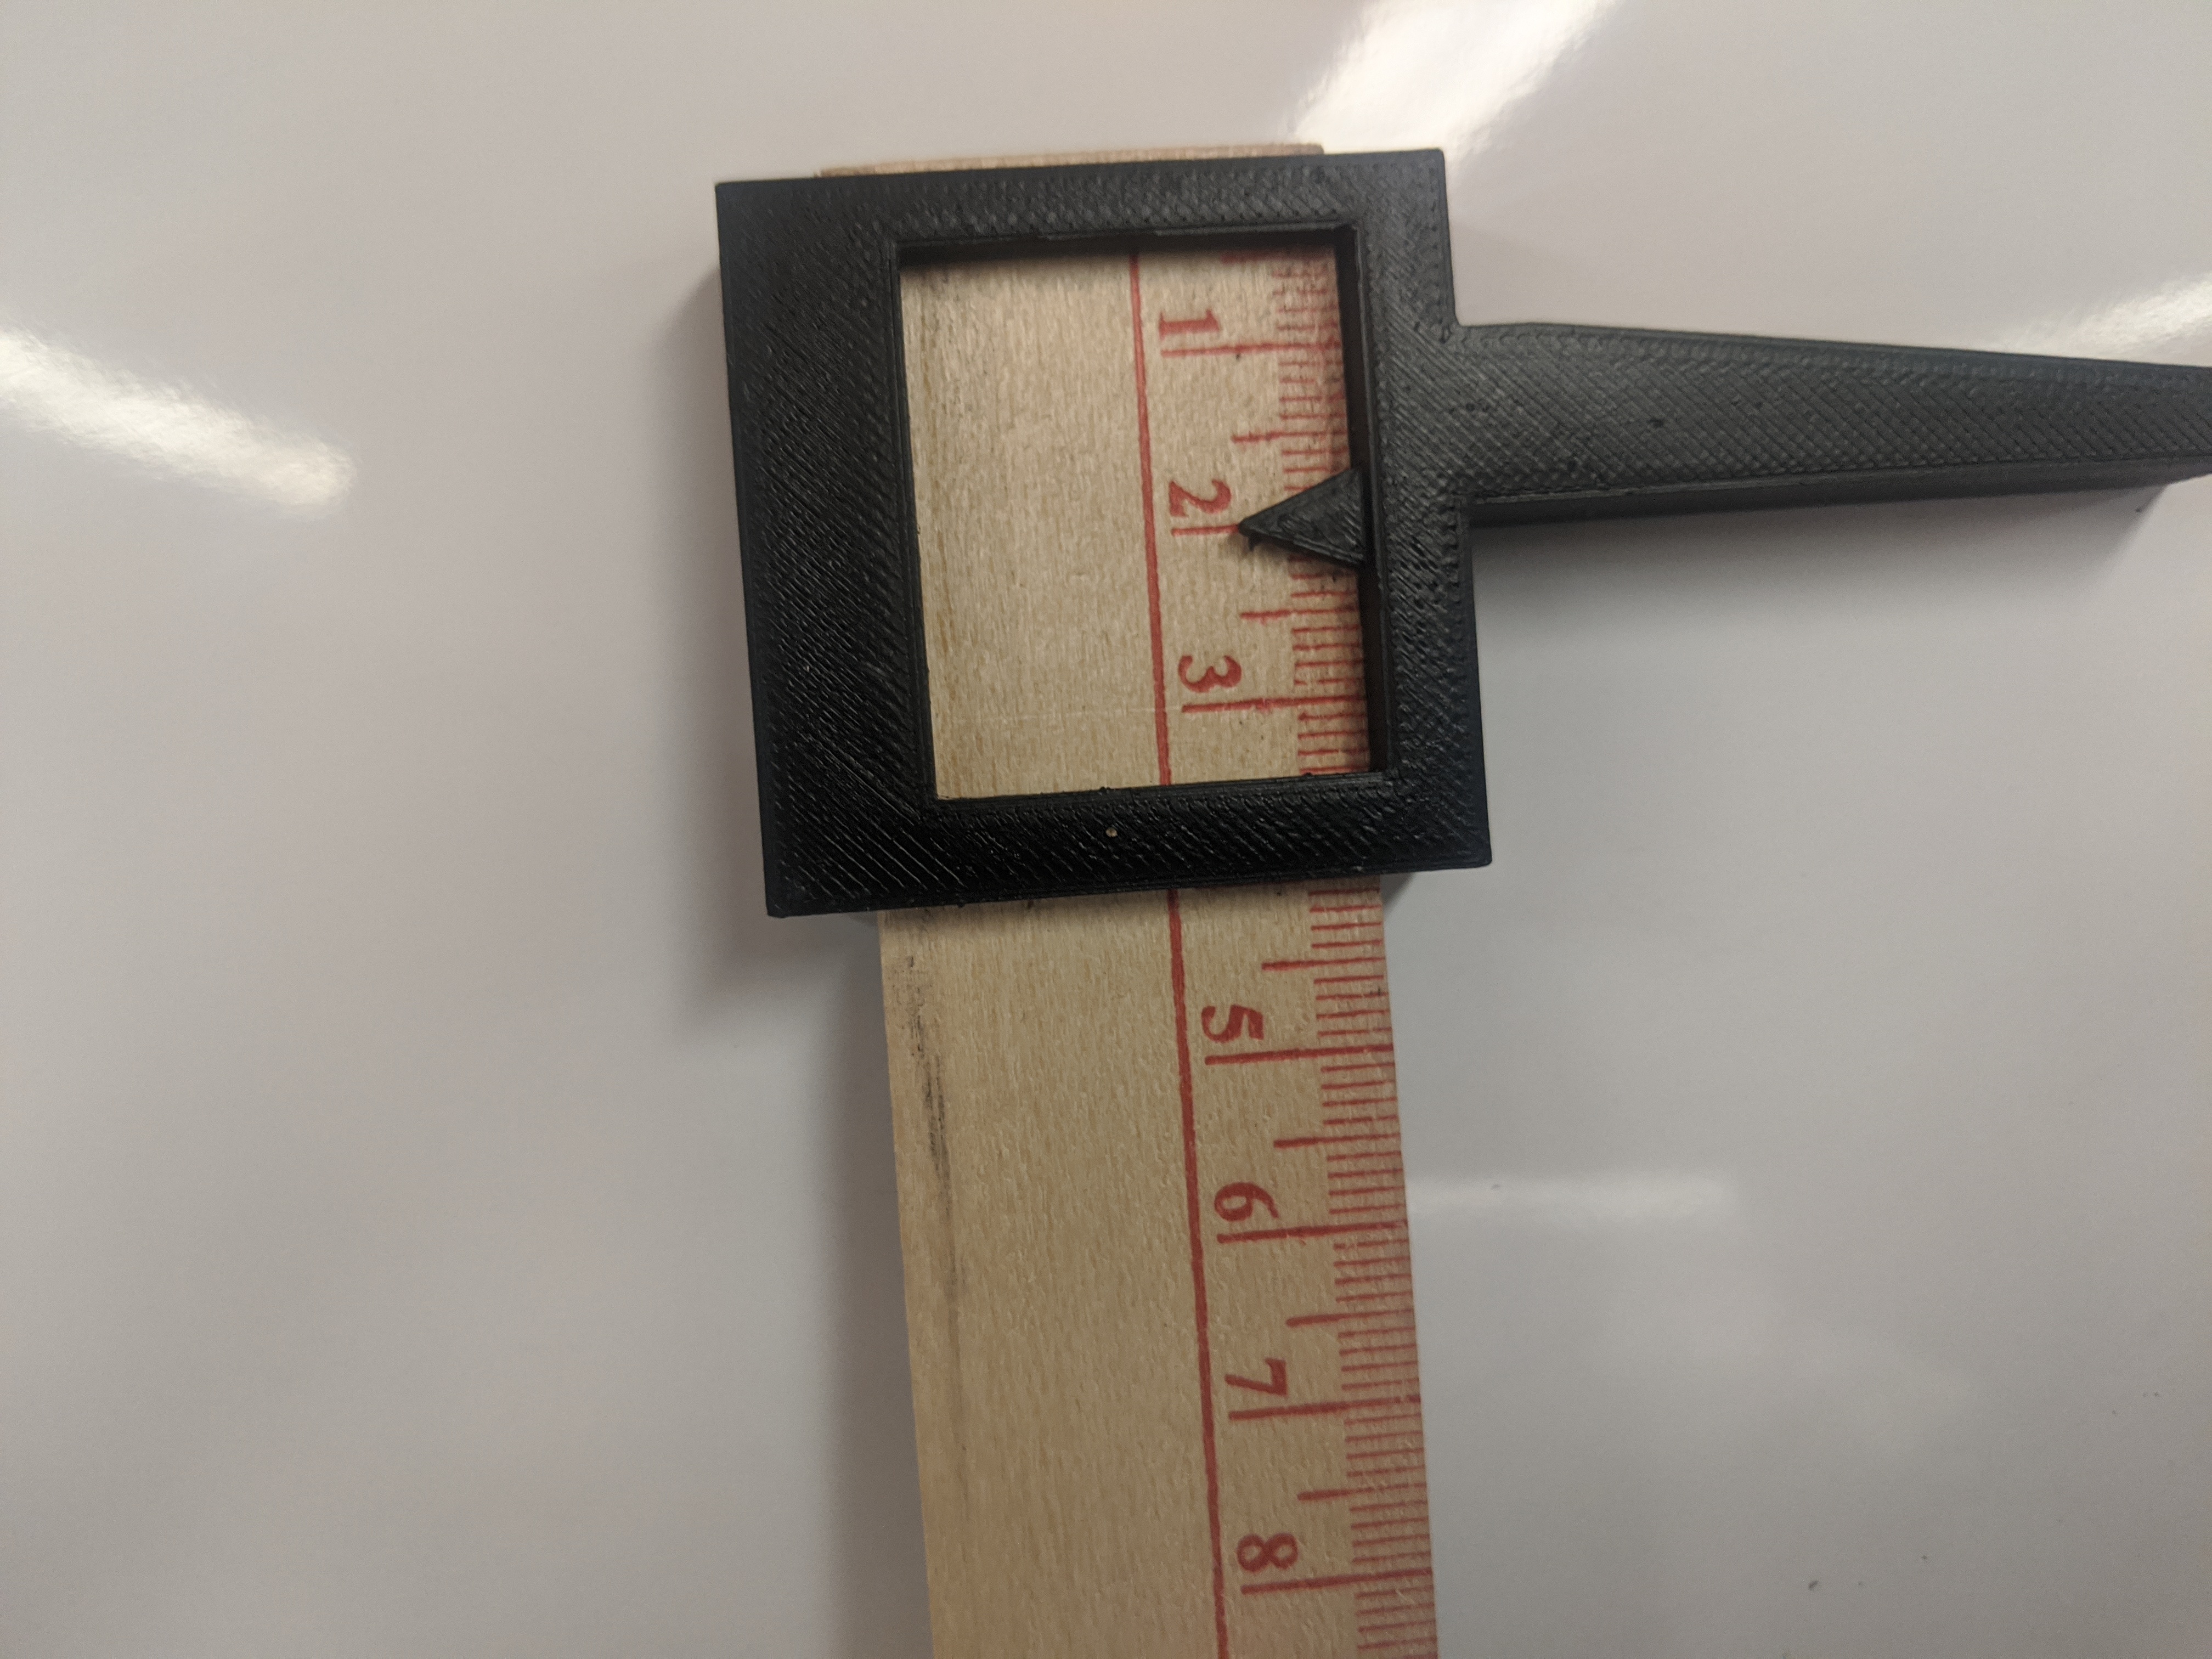 Yard/Meter stick calipers